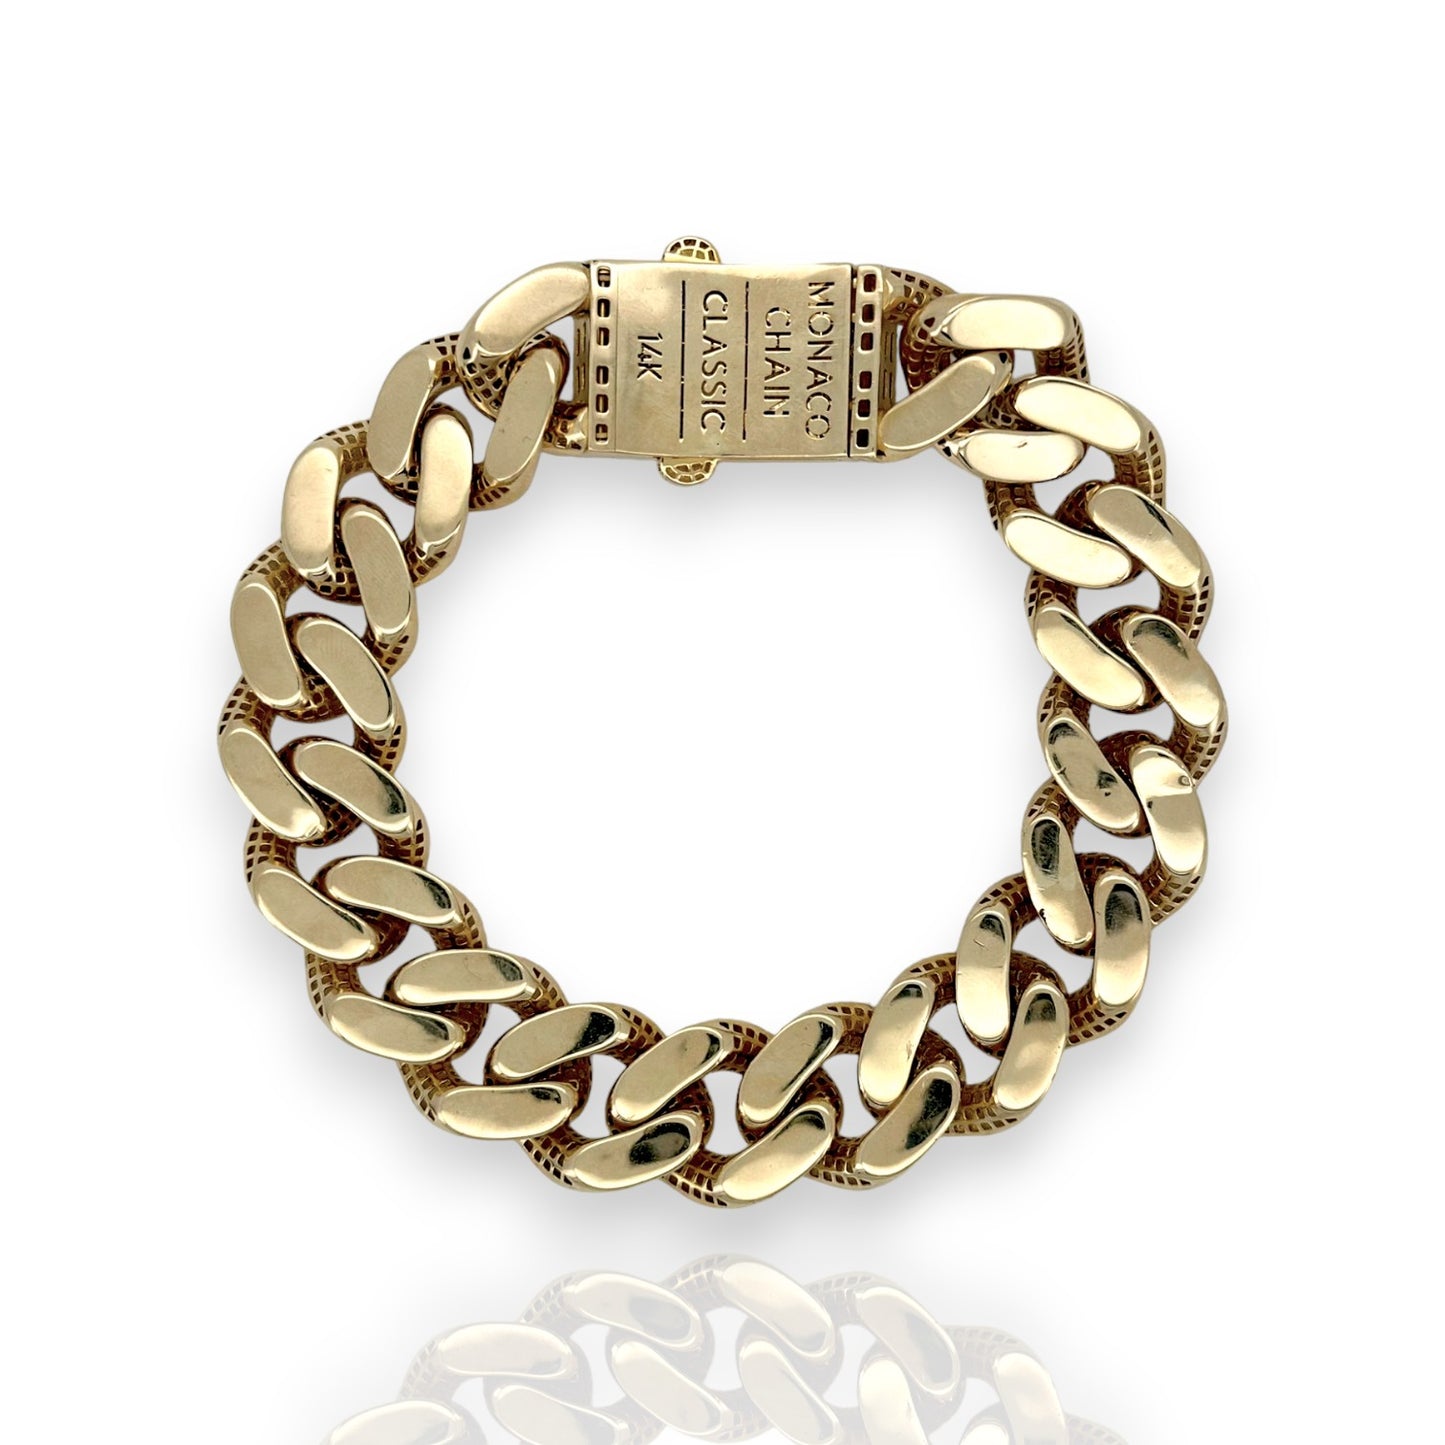 Monaco Chain Miami Cuban Royal Link CZ Lock Bracelet 14K Yellow Gold - Hollow